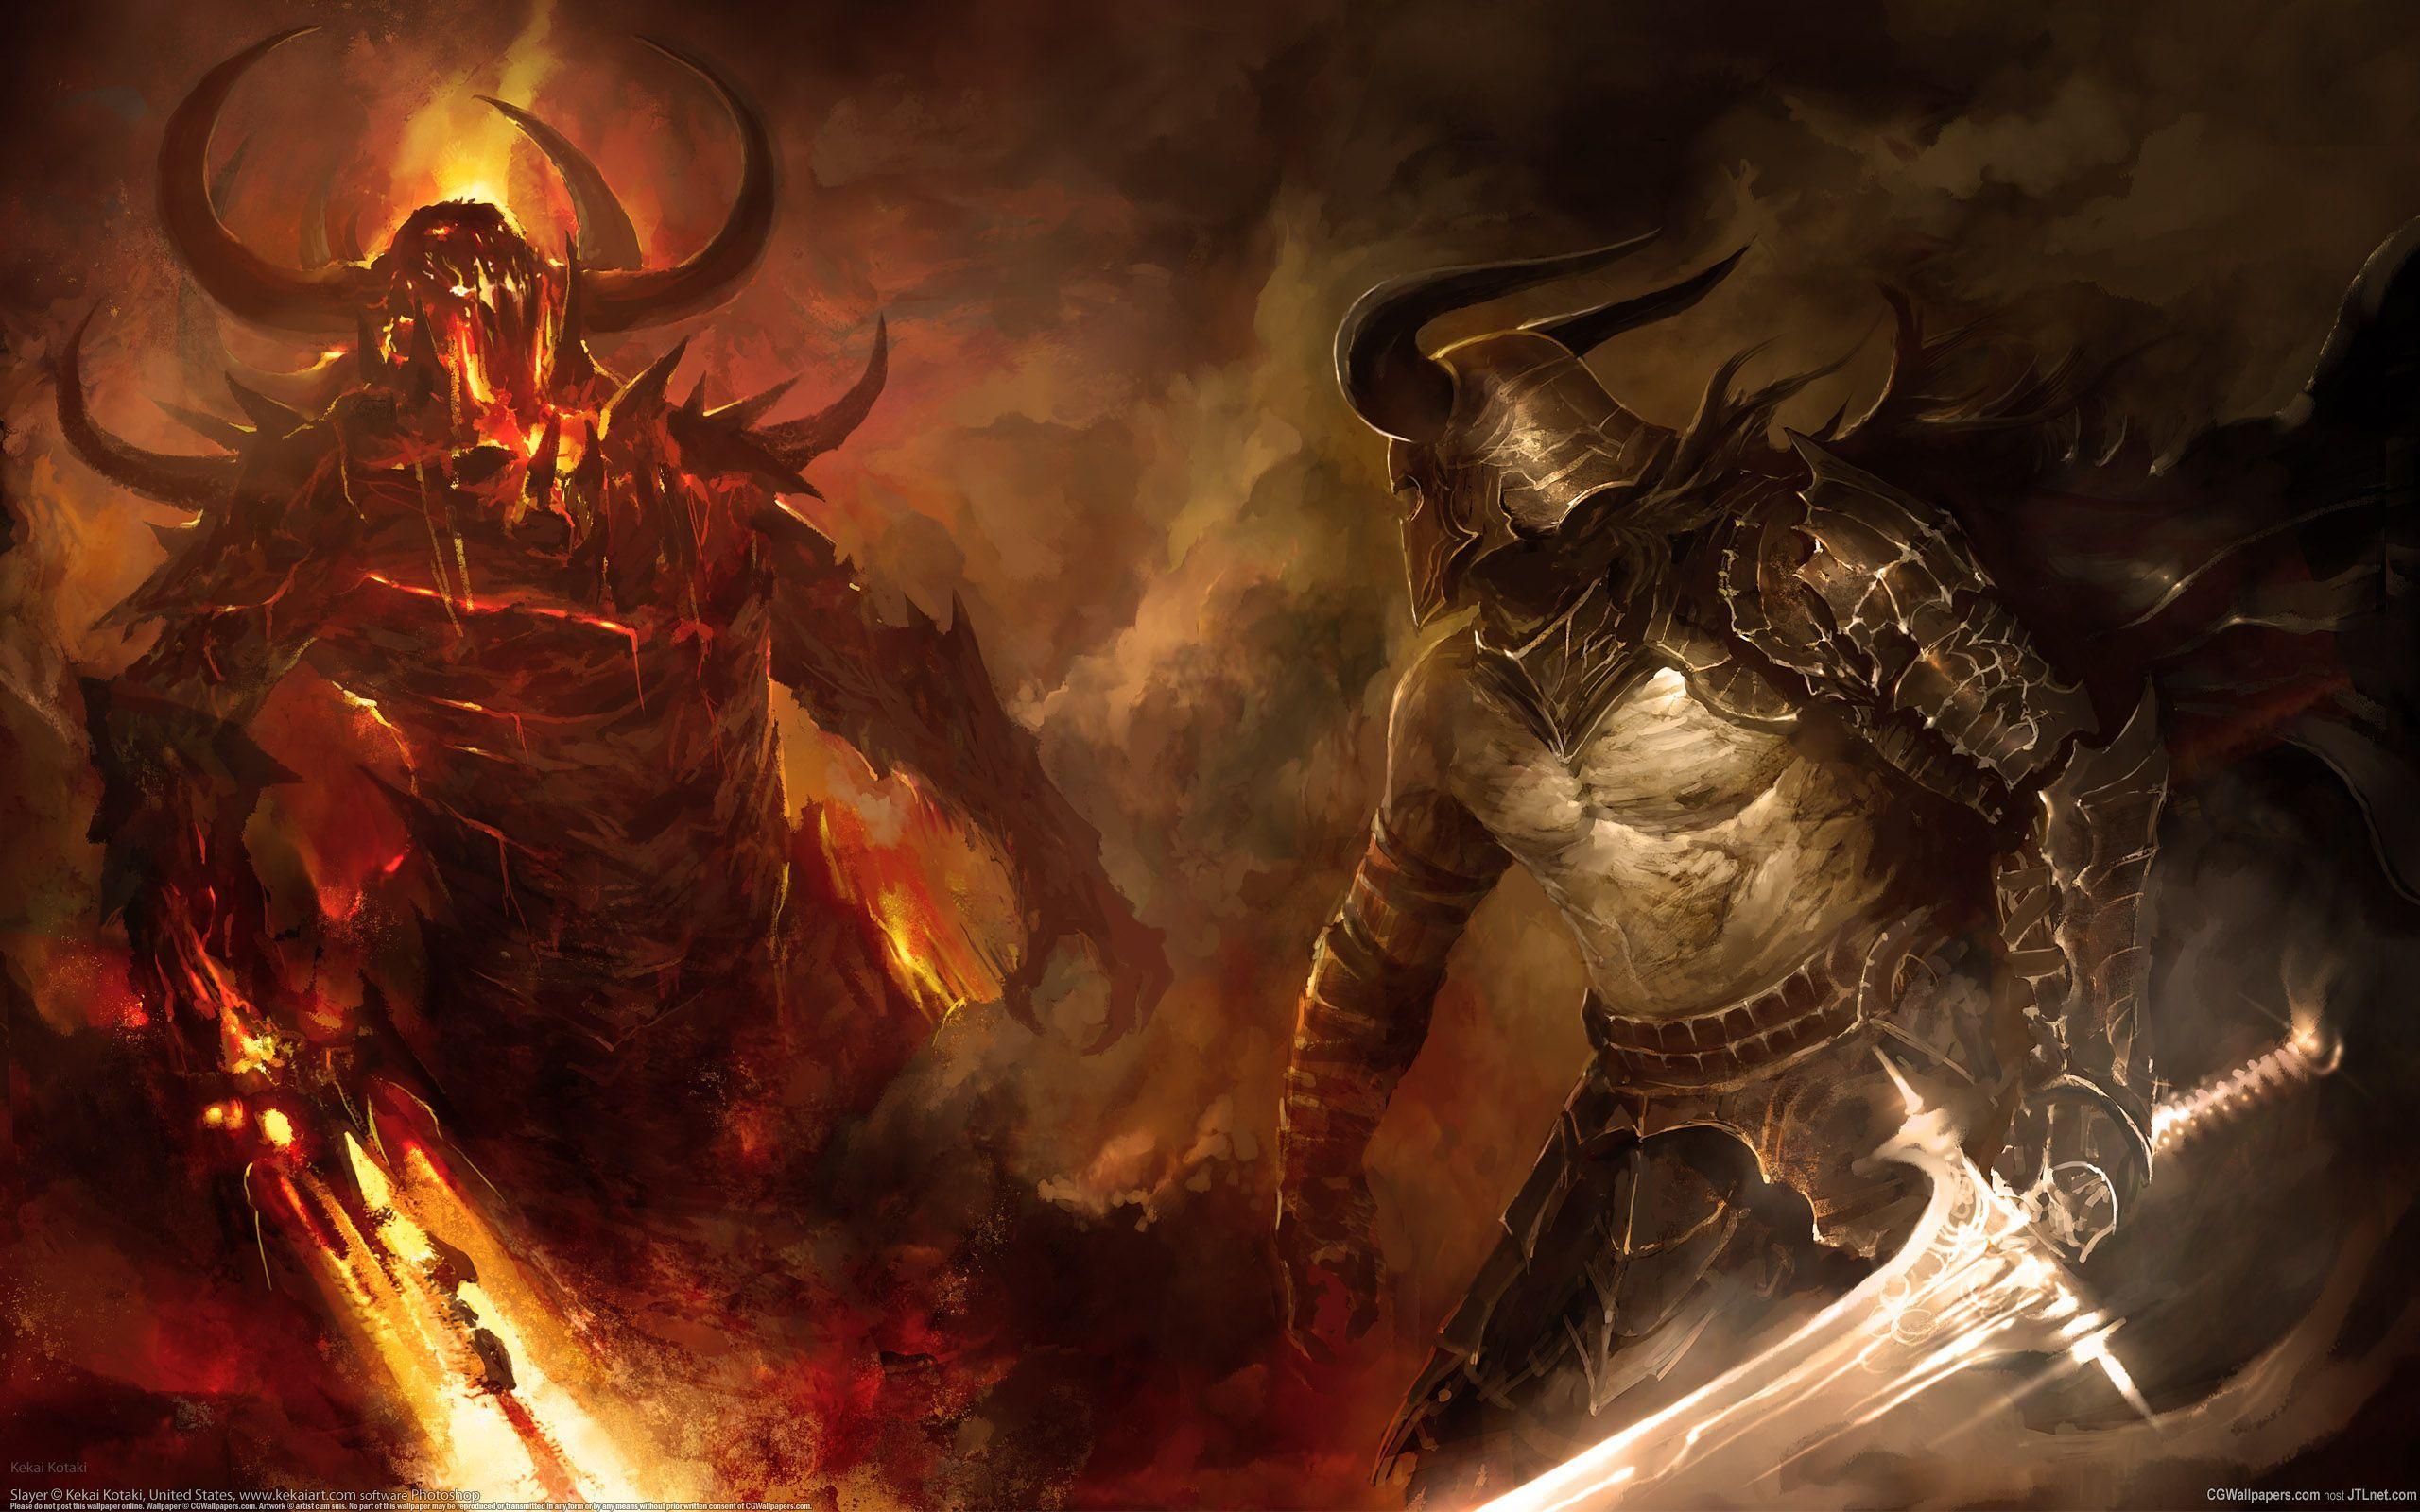 HD Good Vs Evil Warrior Version Wallpaper. Download Free -123408. Fantasy illustration, Guild wars, Angels and demons